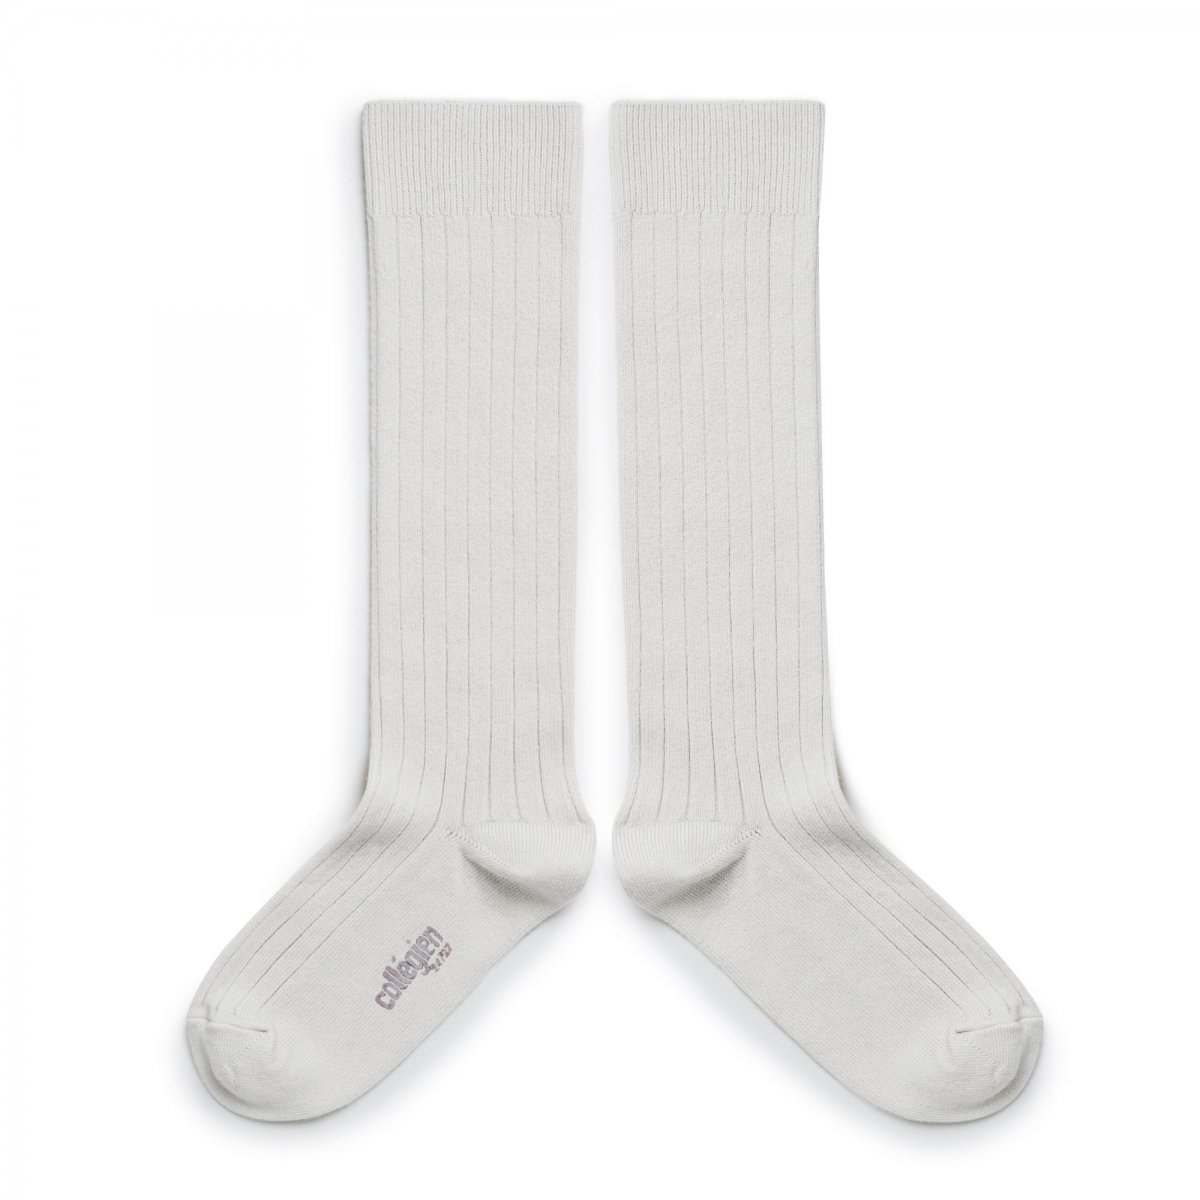 Collégien - Knee high socks La Haute blanc neige - Tights & socks - 2950 908 La Haute 